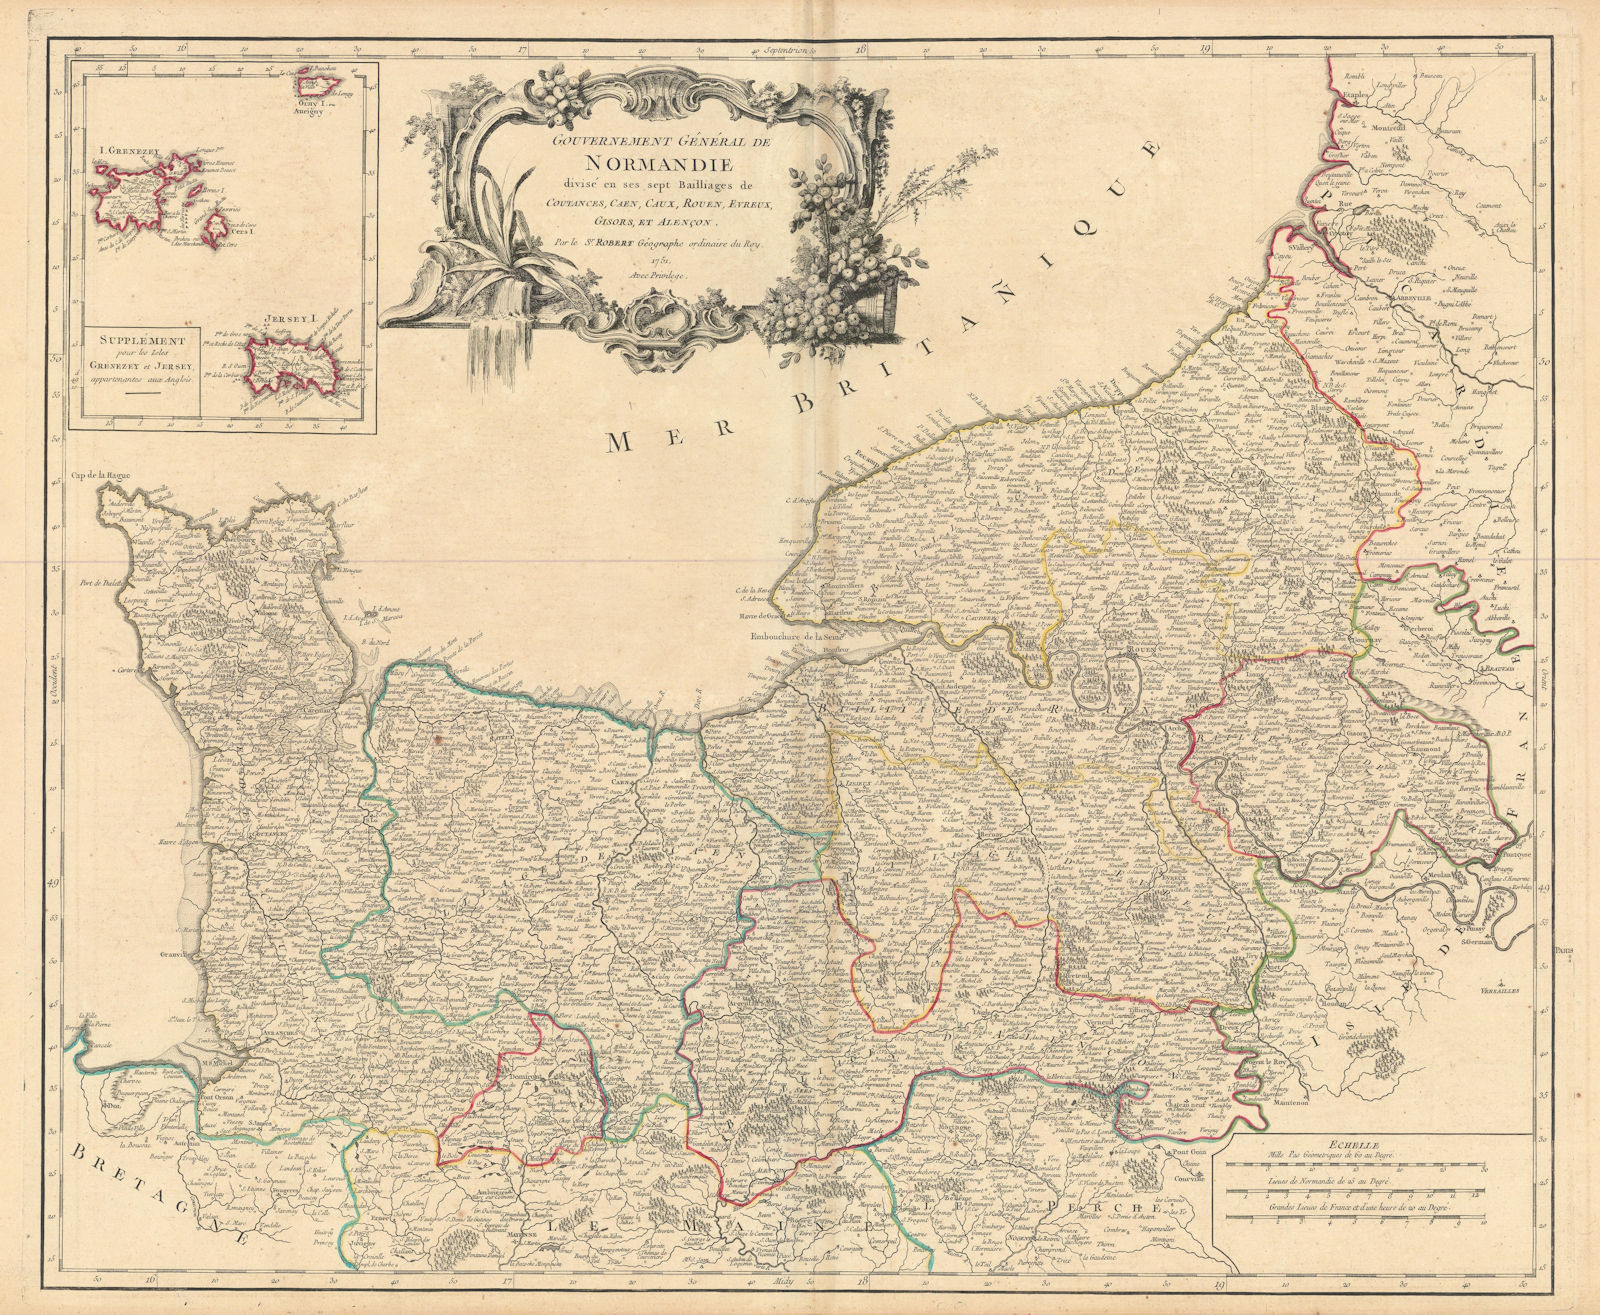 "Gouvernement Général de Normandie" Normandy. NW France. VAUGONDY 1751 old map